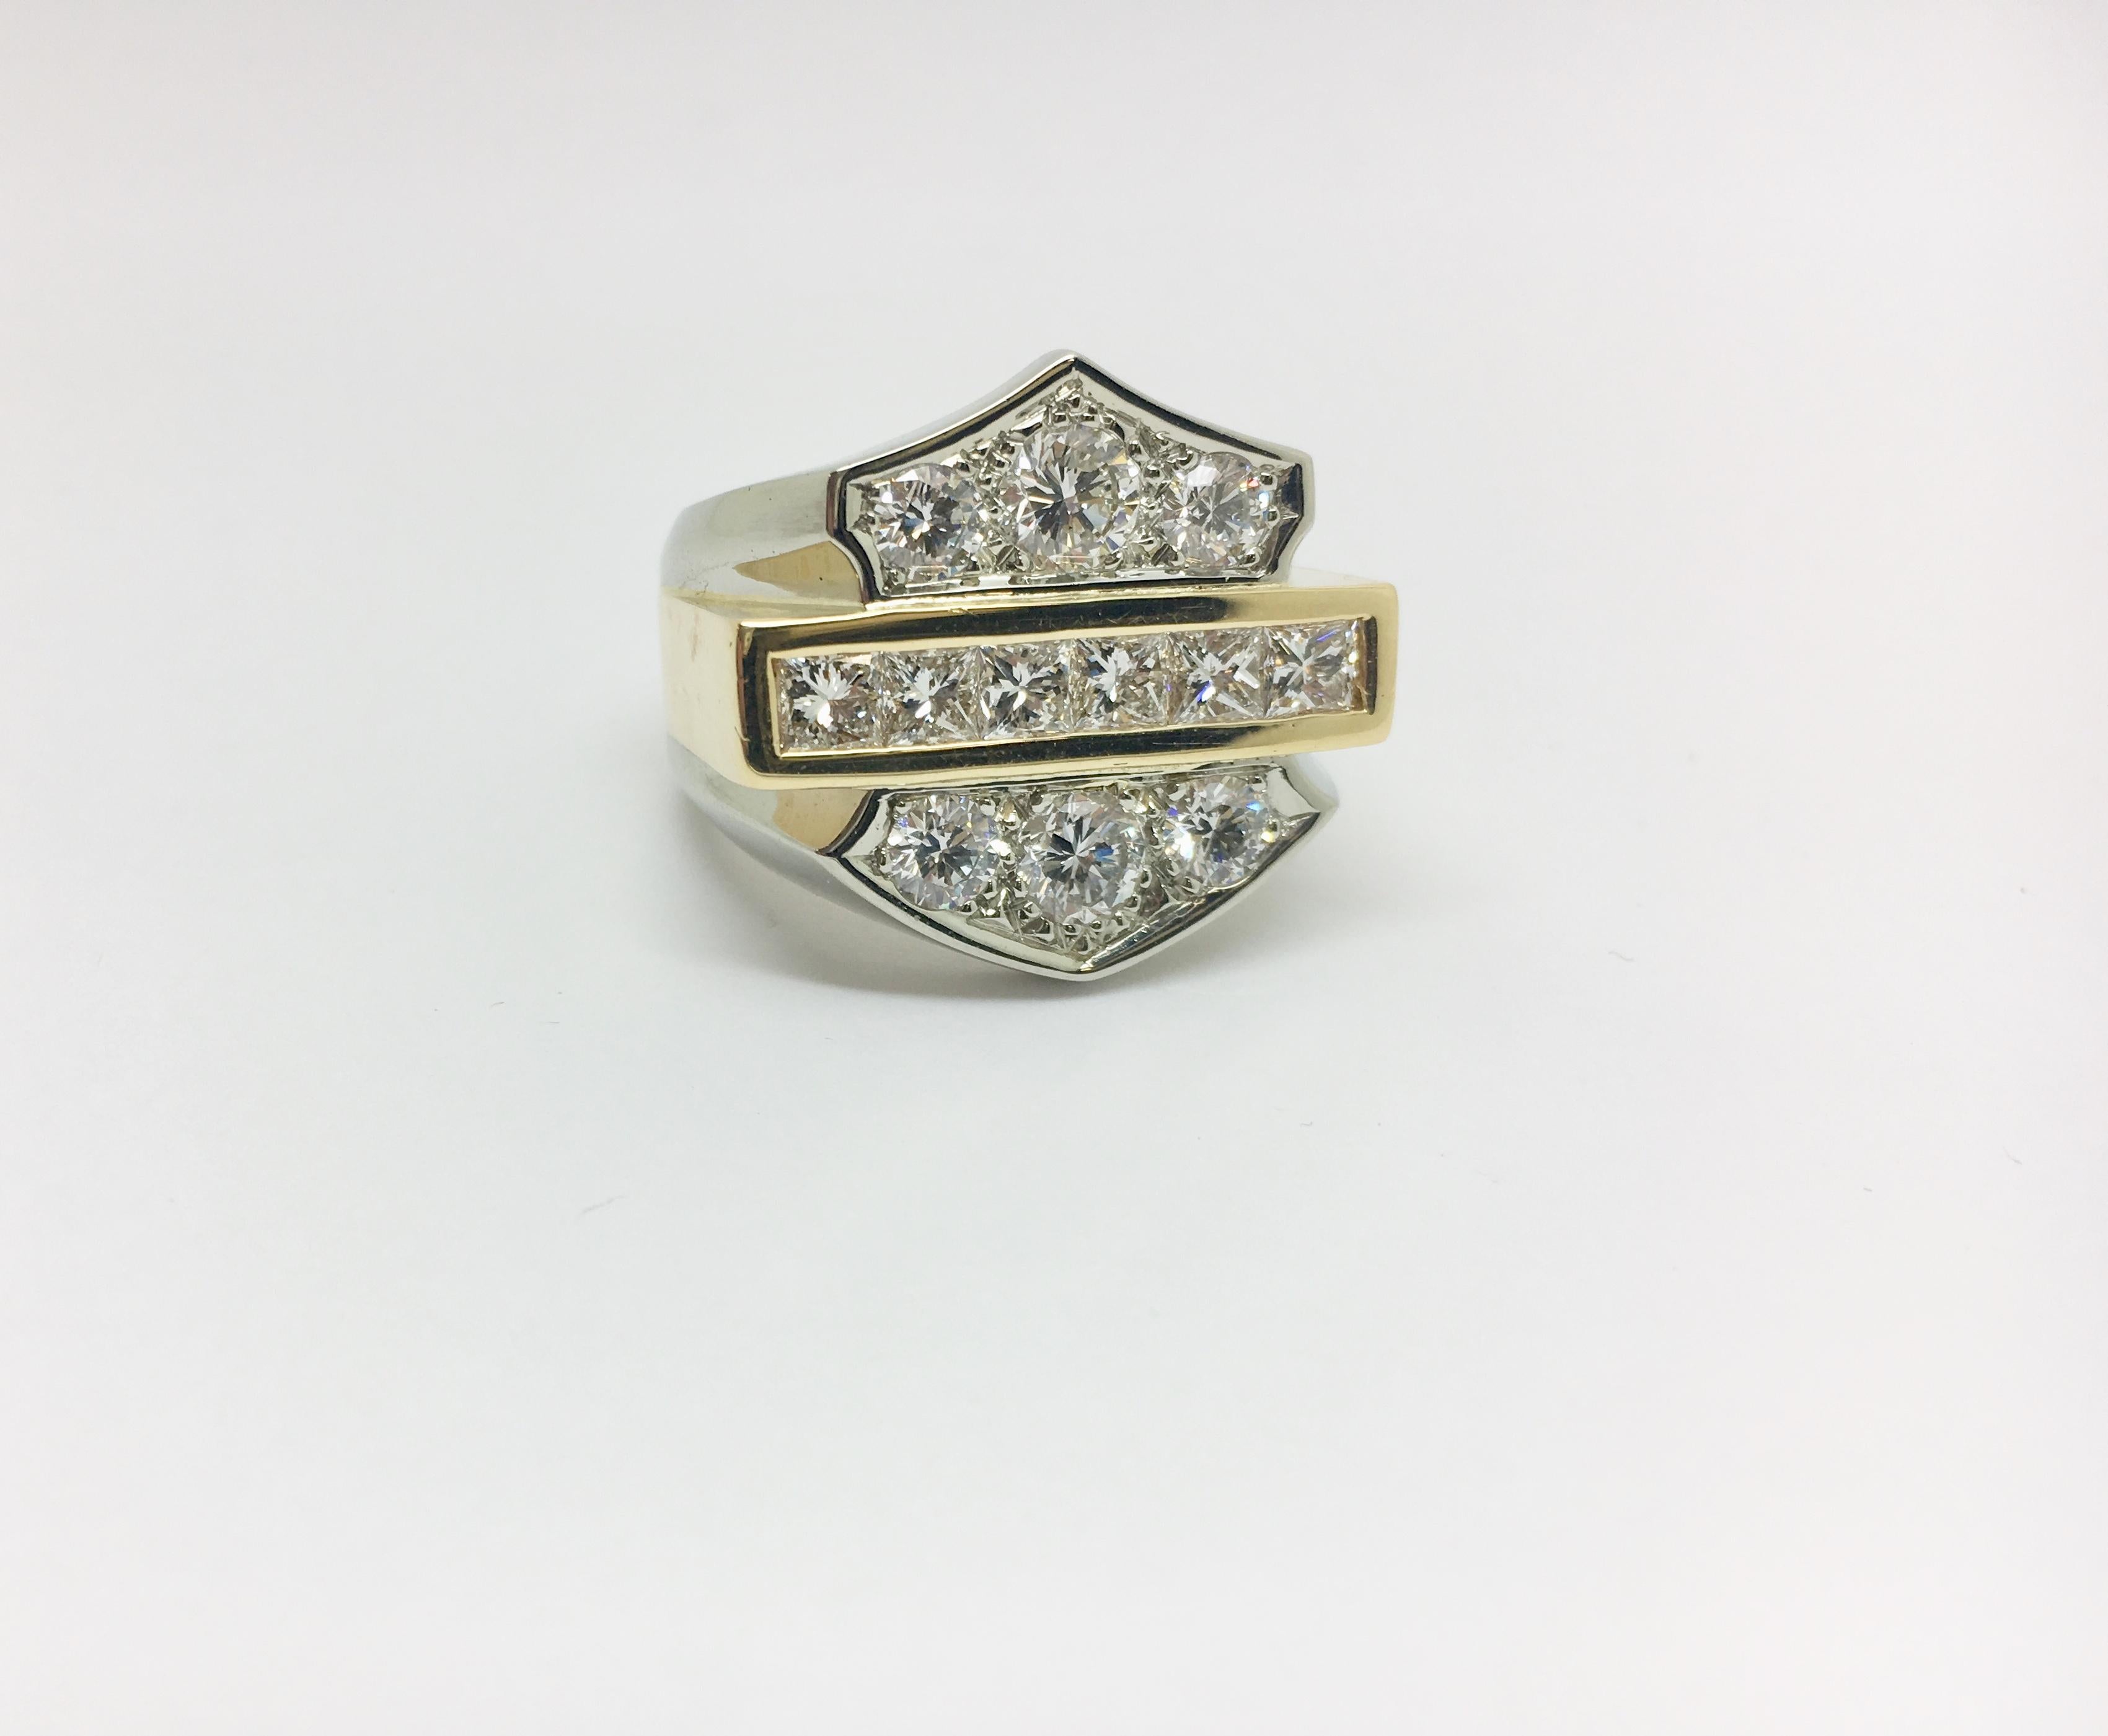 Ein vom Harley Davidson Stil inspirierter Ring aus 18kt Weiß- und Gelbgold mit Diamanten. Die runden Diamanten in diesem Ring haben ein Gesamtgewicht von ca. 1,64 Karat (VS2-SI), die Prinzessinnen-Diamanten haben ein Gesamtgewicht von  etwa 1,31